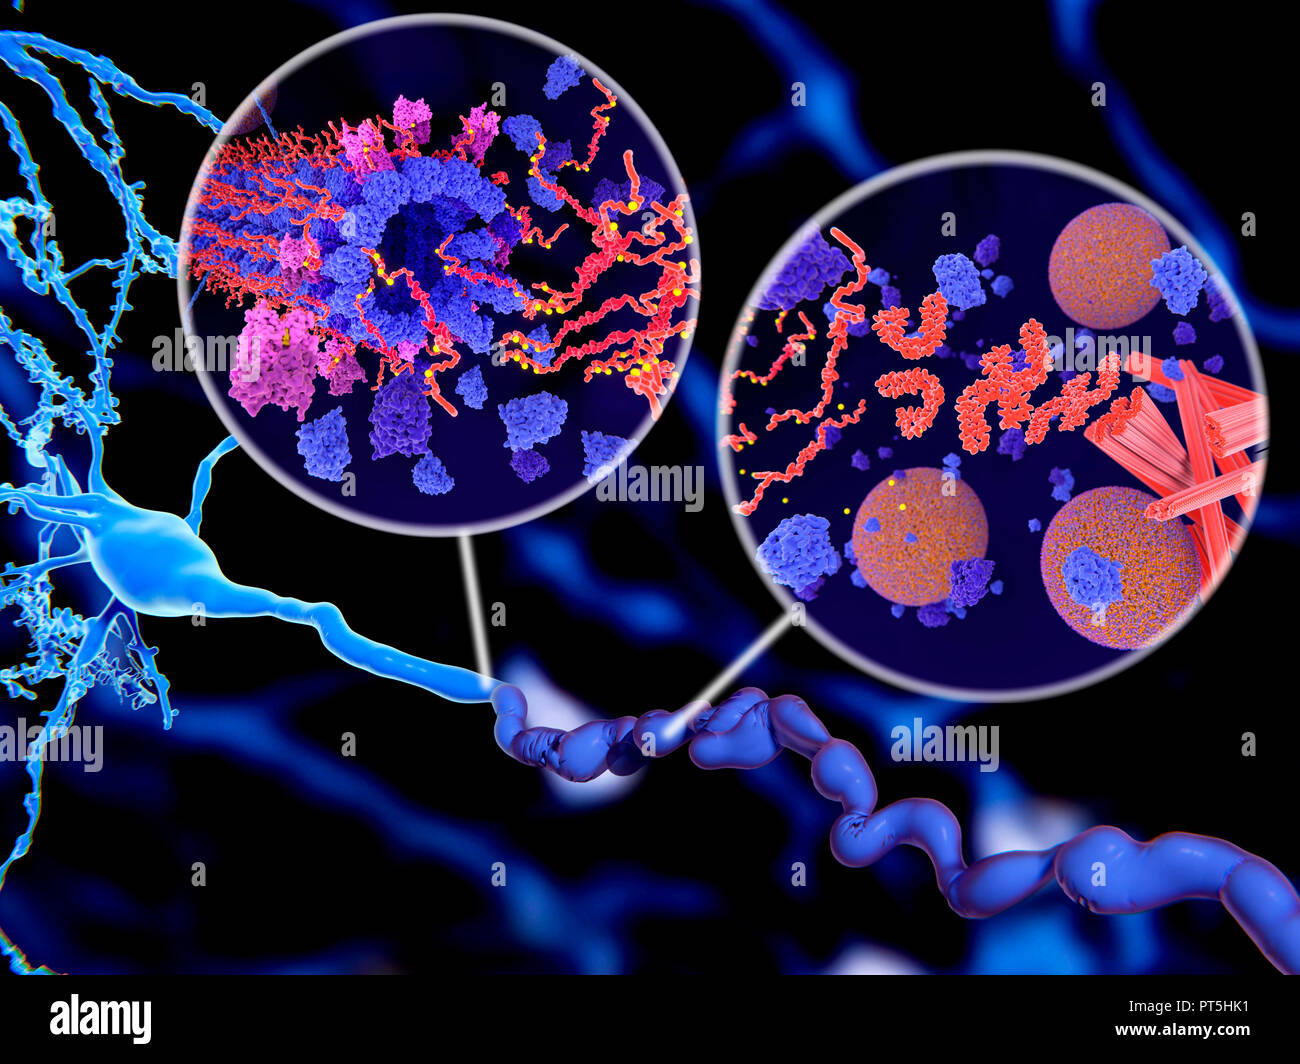 La protéine tau dans la maladie d'Alzheimer,illustration.L'EISN illustrent deux méthodes de phosphorylation pathologique (jaune) de protéines tau (rouge-orange) par des kinases (bleu-violet) influent sur les cellules nerveuses dans ce qu'on appelle un enchevêtrement neurofibrillaire.L'illustration principale montrant une cellule nerveuse (neurone,bleu,en bas à gauche) et son axone (voyage en bas),illustré dans un état anormal et difformes.des agrégations de protéines tau pathologiques provoquent la désintégration des microtubules (encadré à gauche).Le transport des vésicules synaptiques (sphères orange-bleu,l'encart à droite) est également interrompue. Banque D'Images